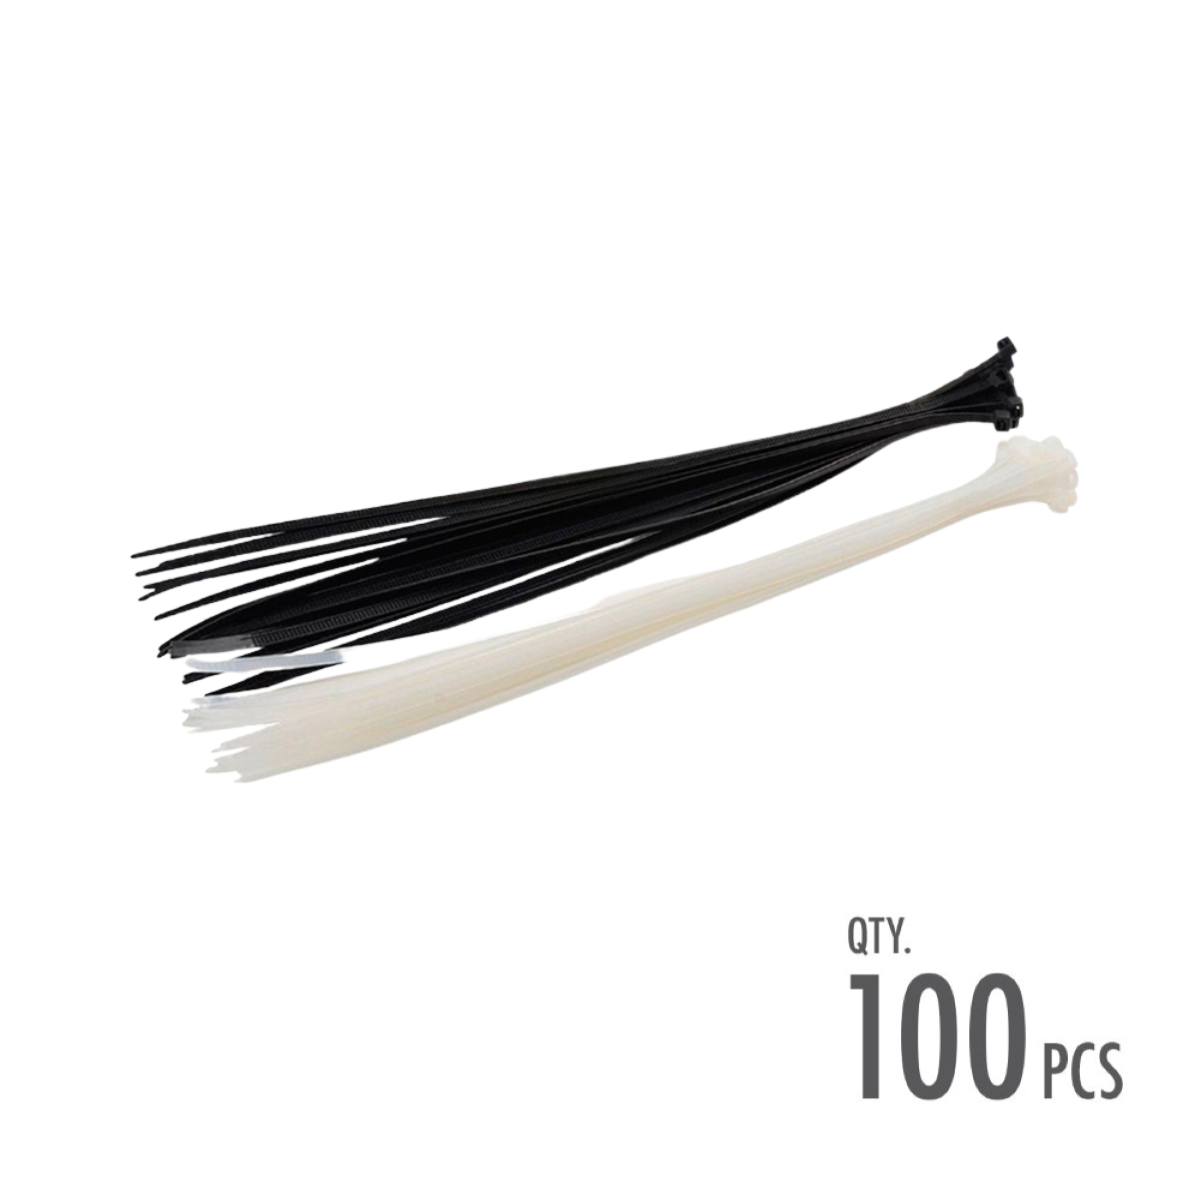 Cable Tie - Clear/Black (Dim: 0.48 x 40cm)